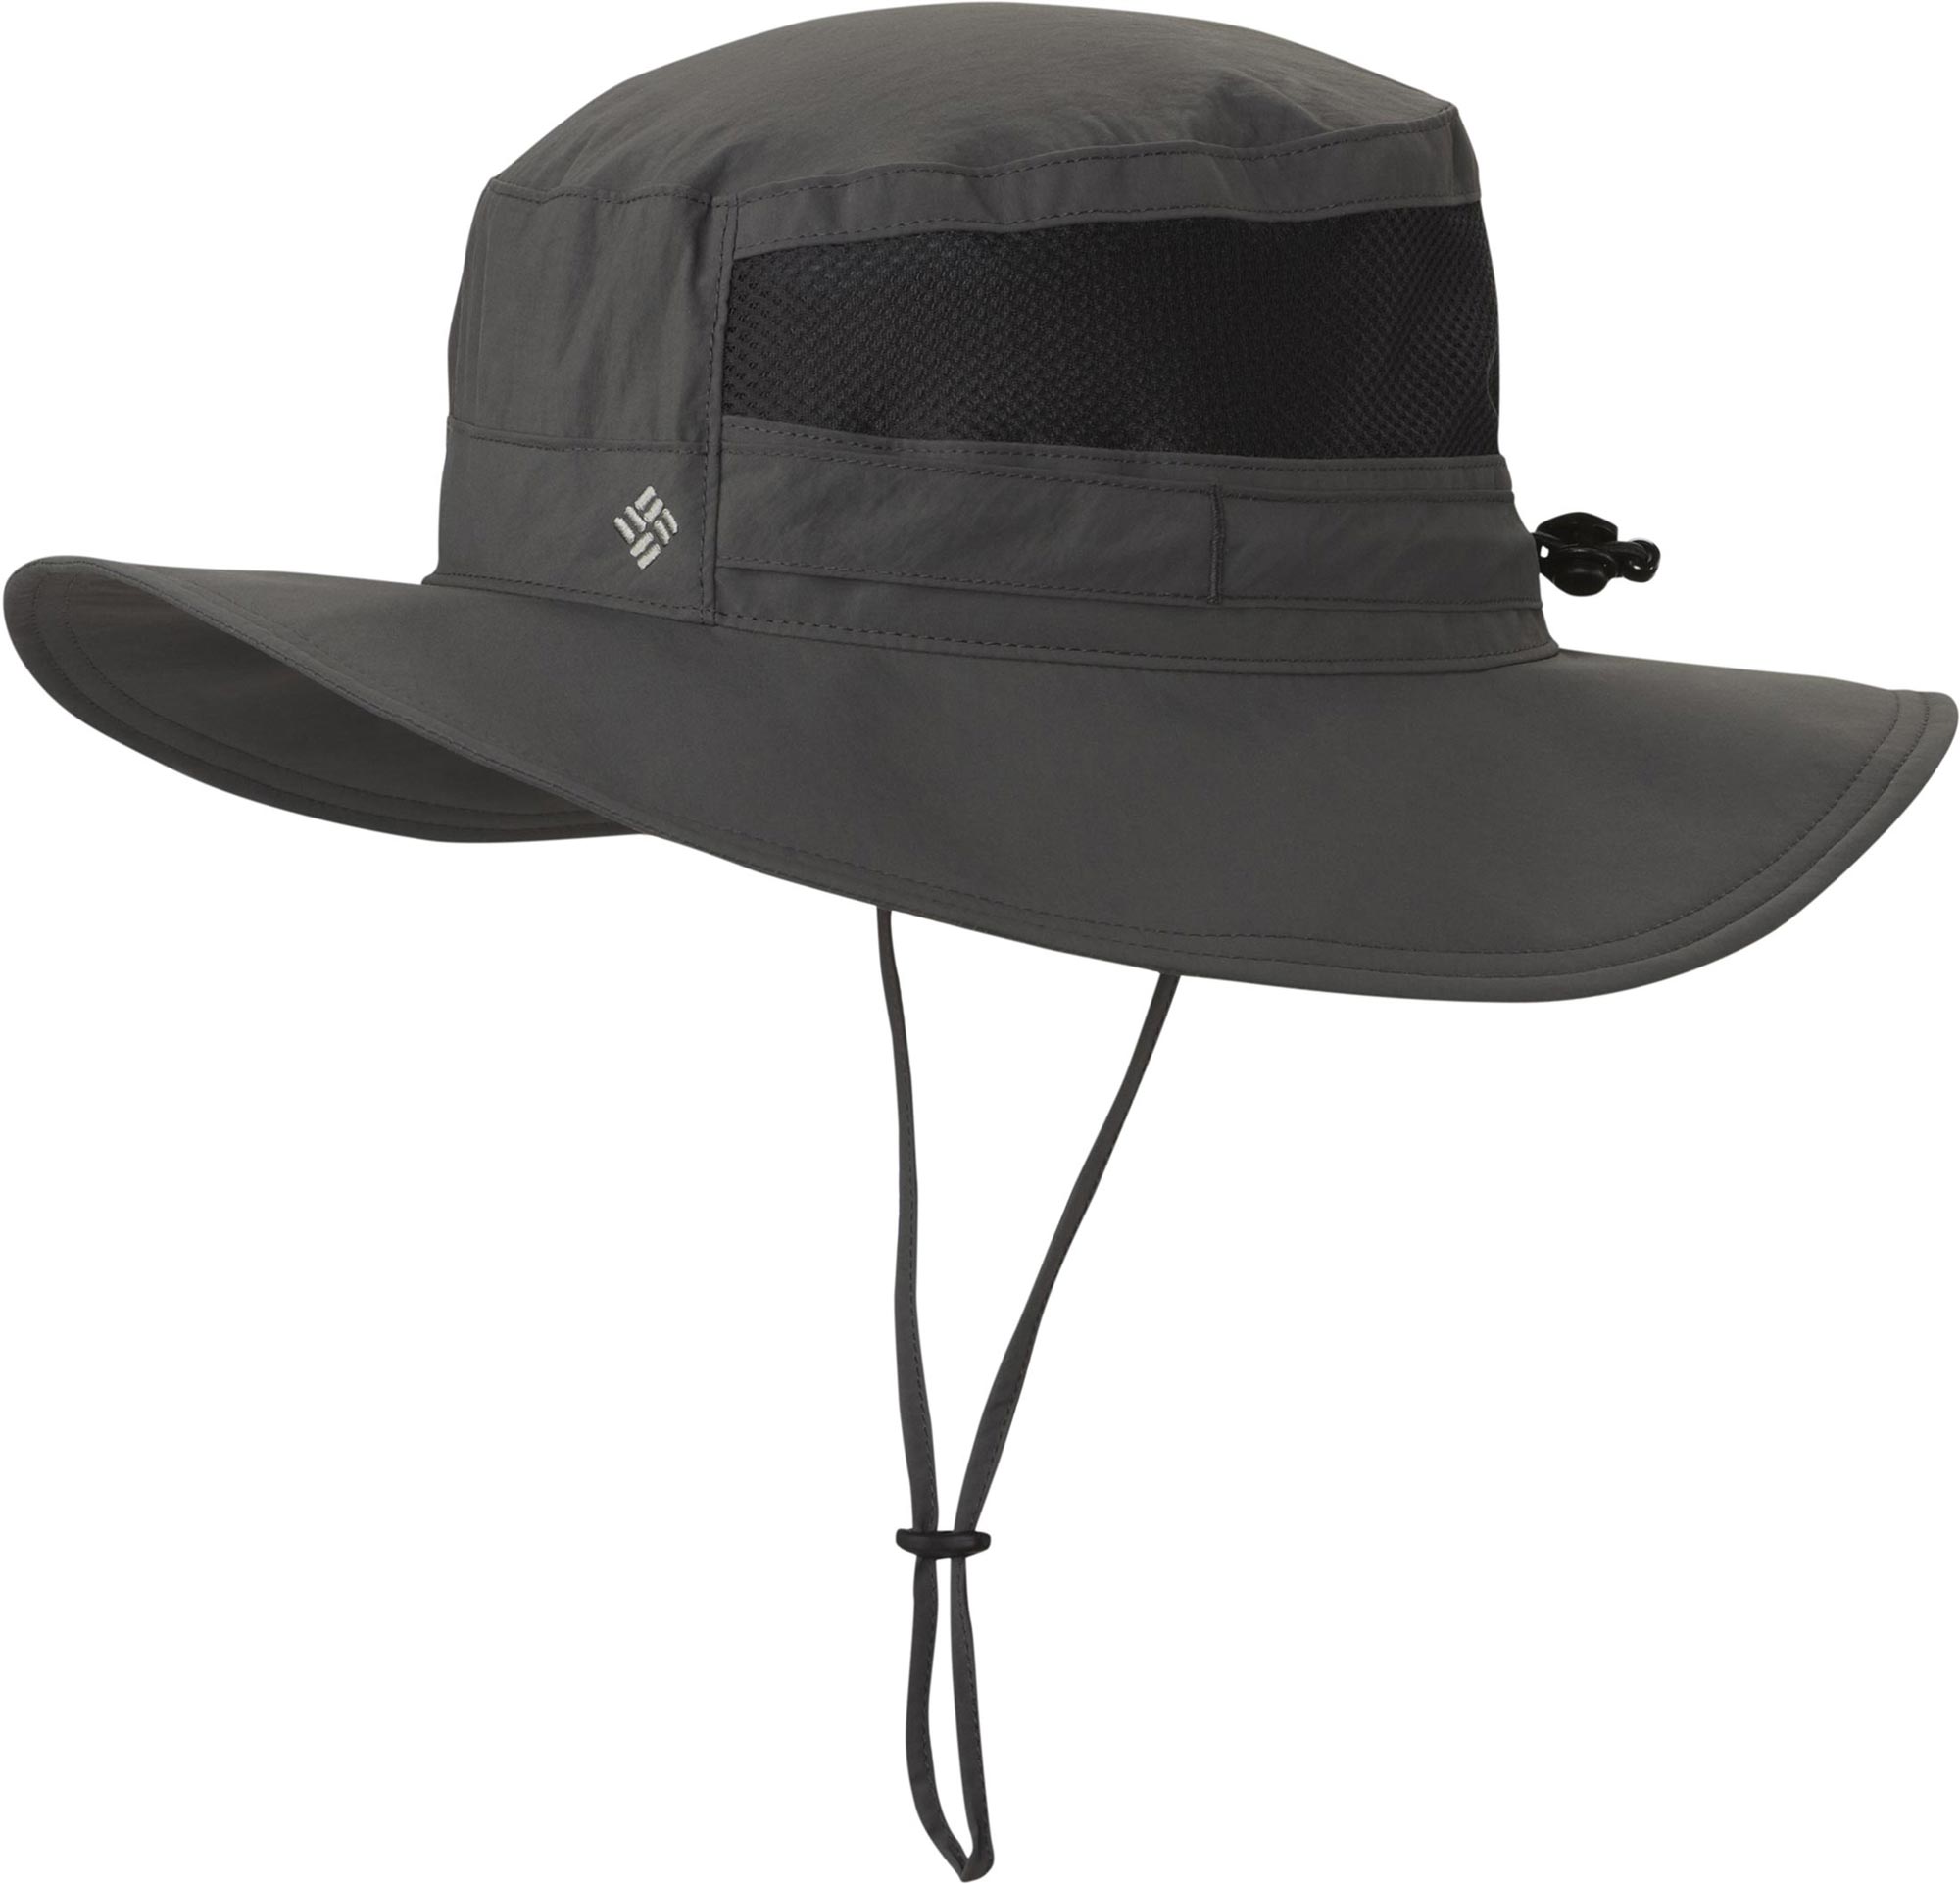 BORA BORA - Fishing hat